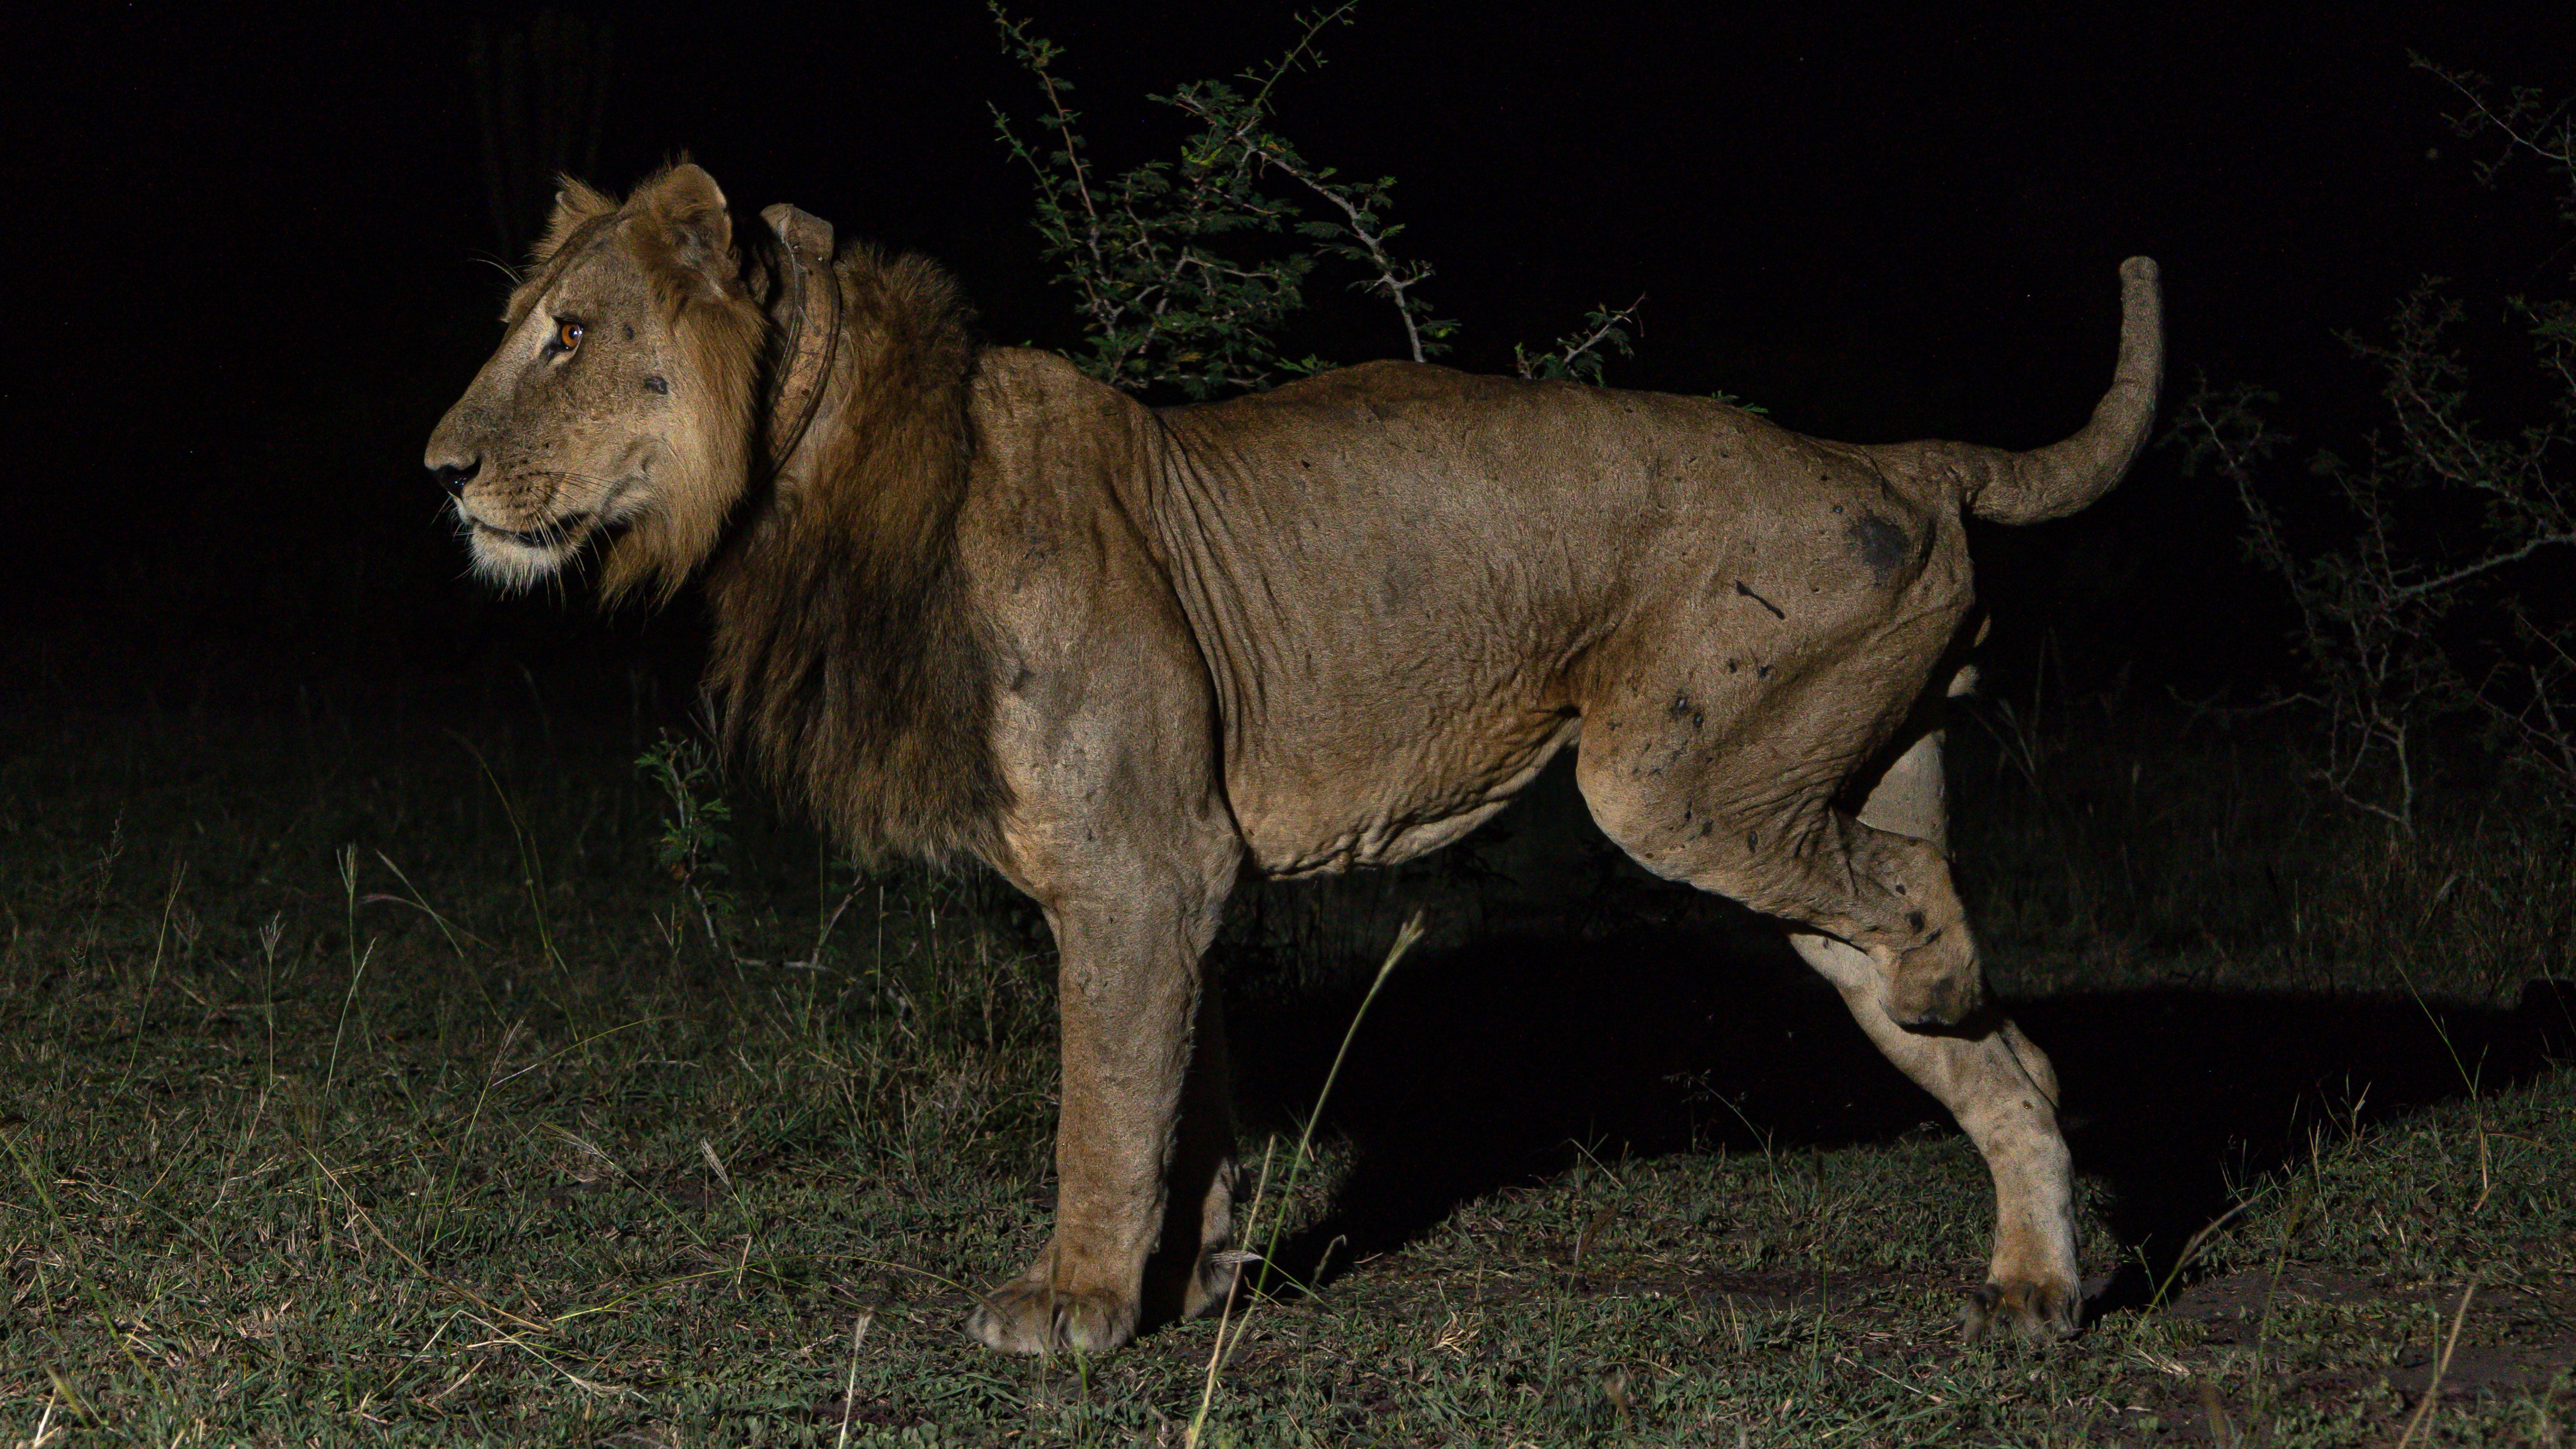 Угандийский лев Джейкоб стоит в темноте среди кустарников, у него отсутствует половина ноги